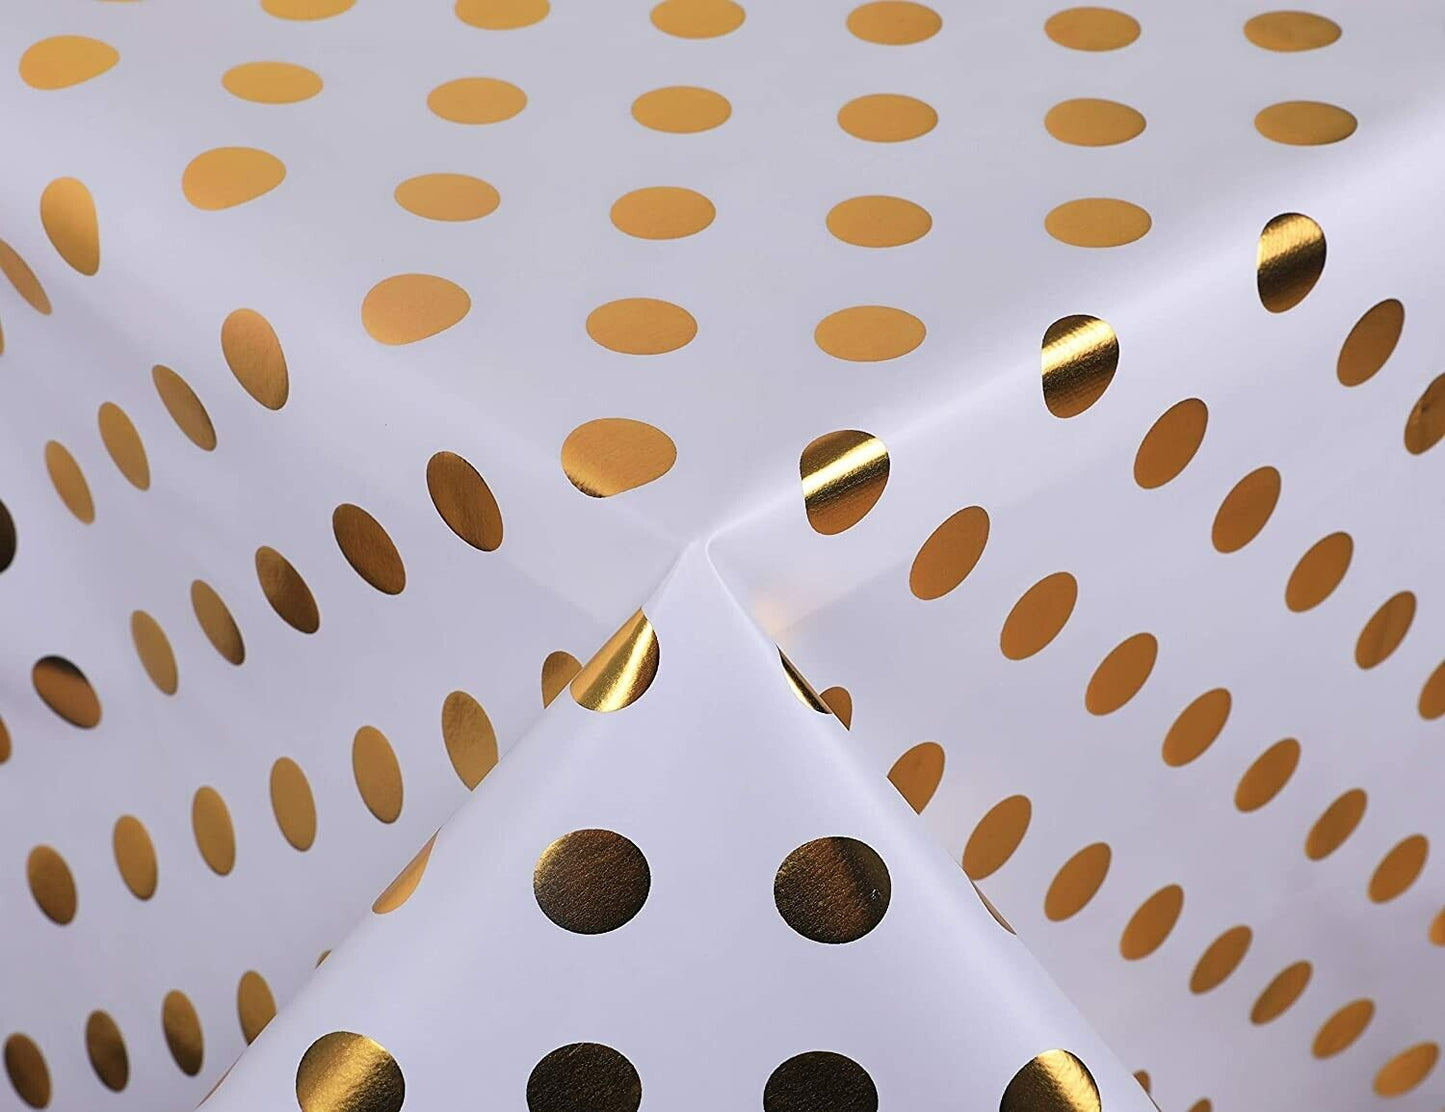 Vinyl Metallic Gold Polka Dot on White Easy Wipe Clean PVC Tablecloth